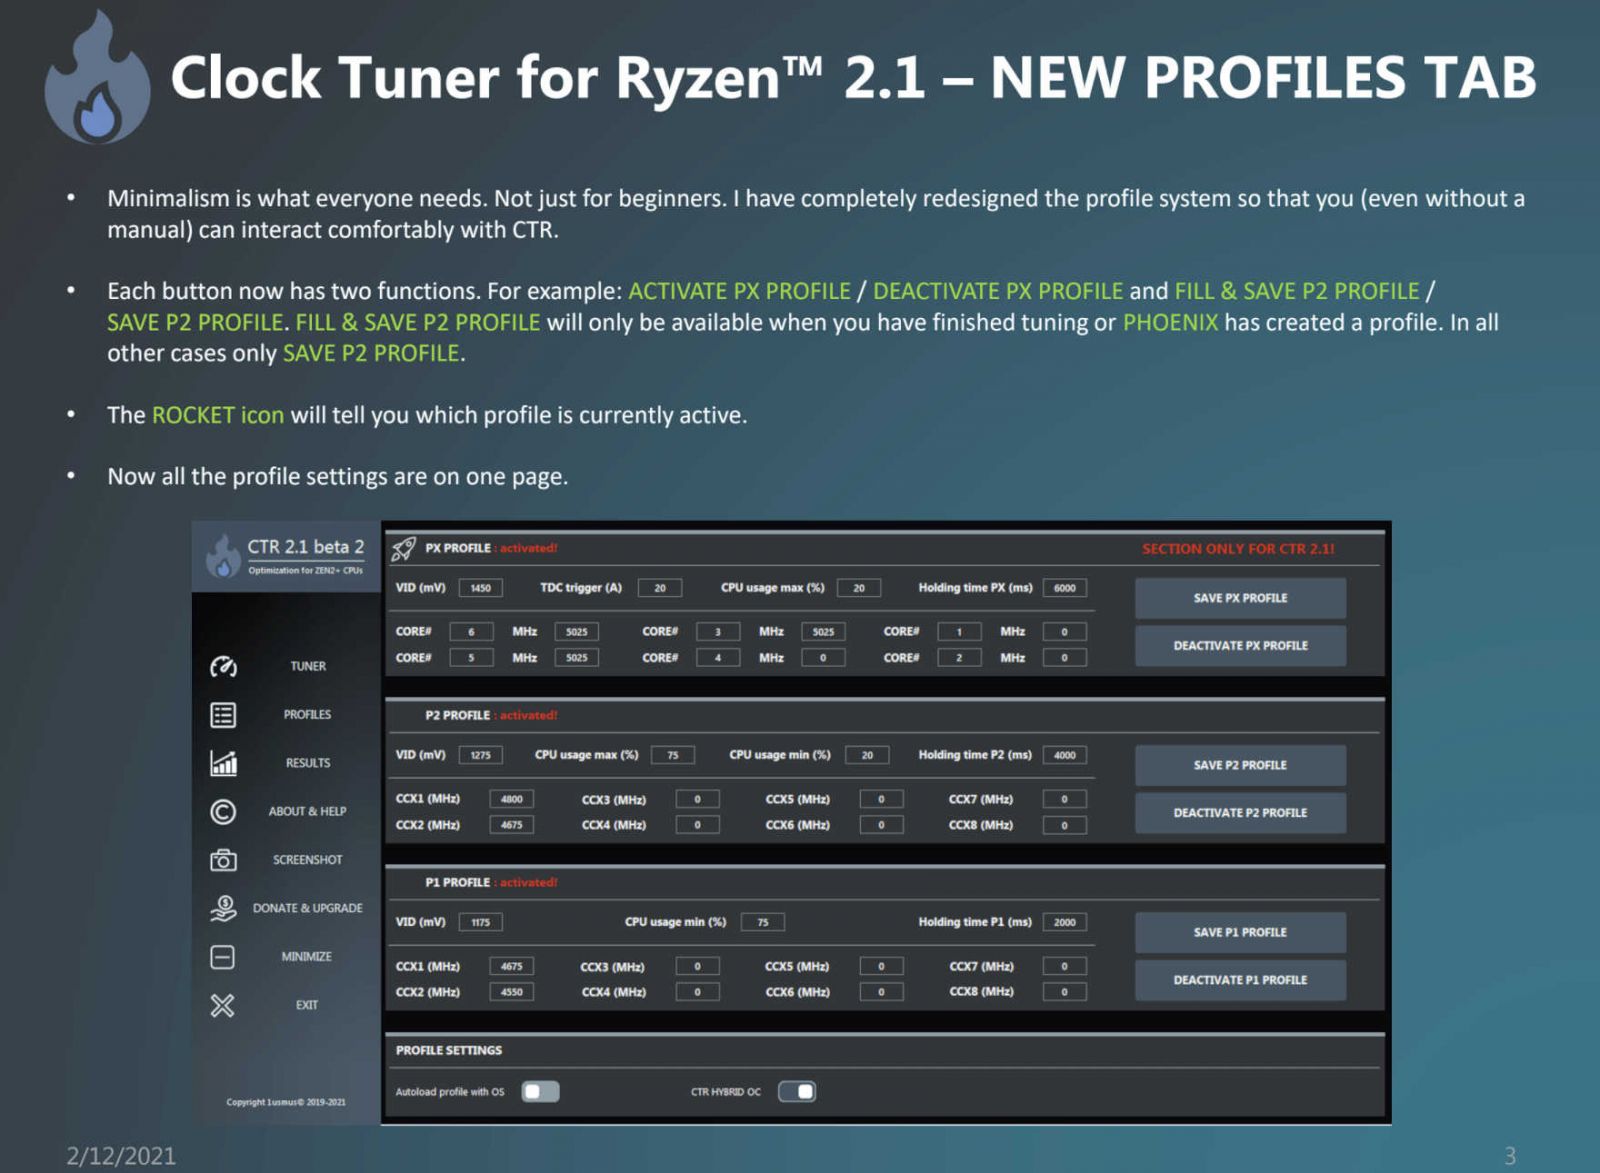 Clock-Tuner-For-Ryzen-2.1-Hybrid-OC-3.jpg